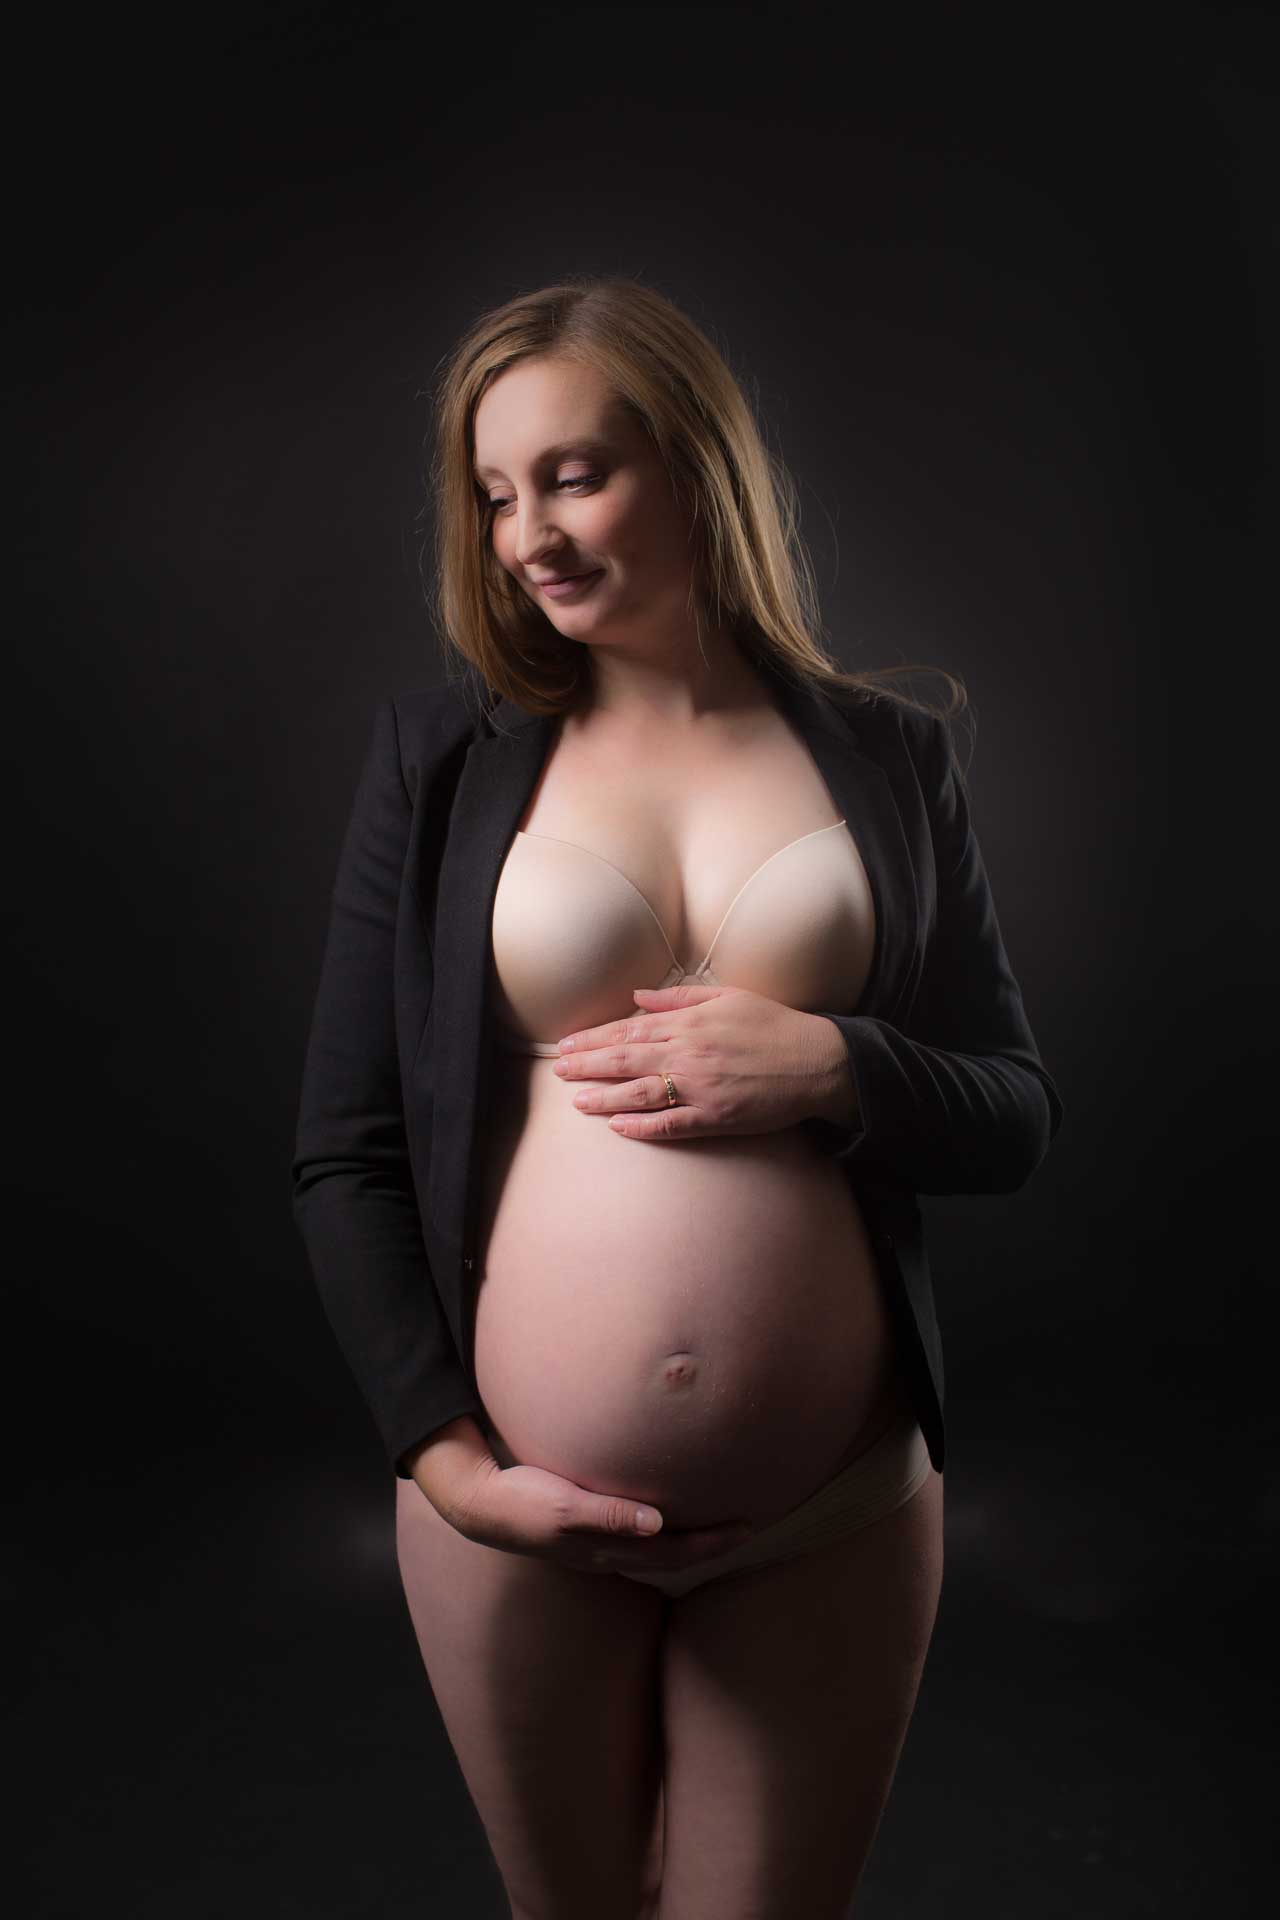 den smukke gravide kvinde er i fokus